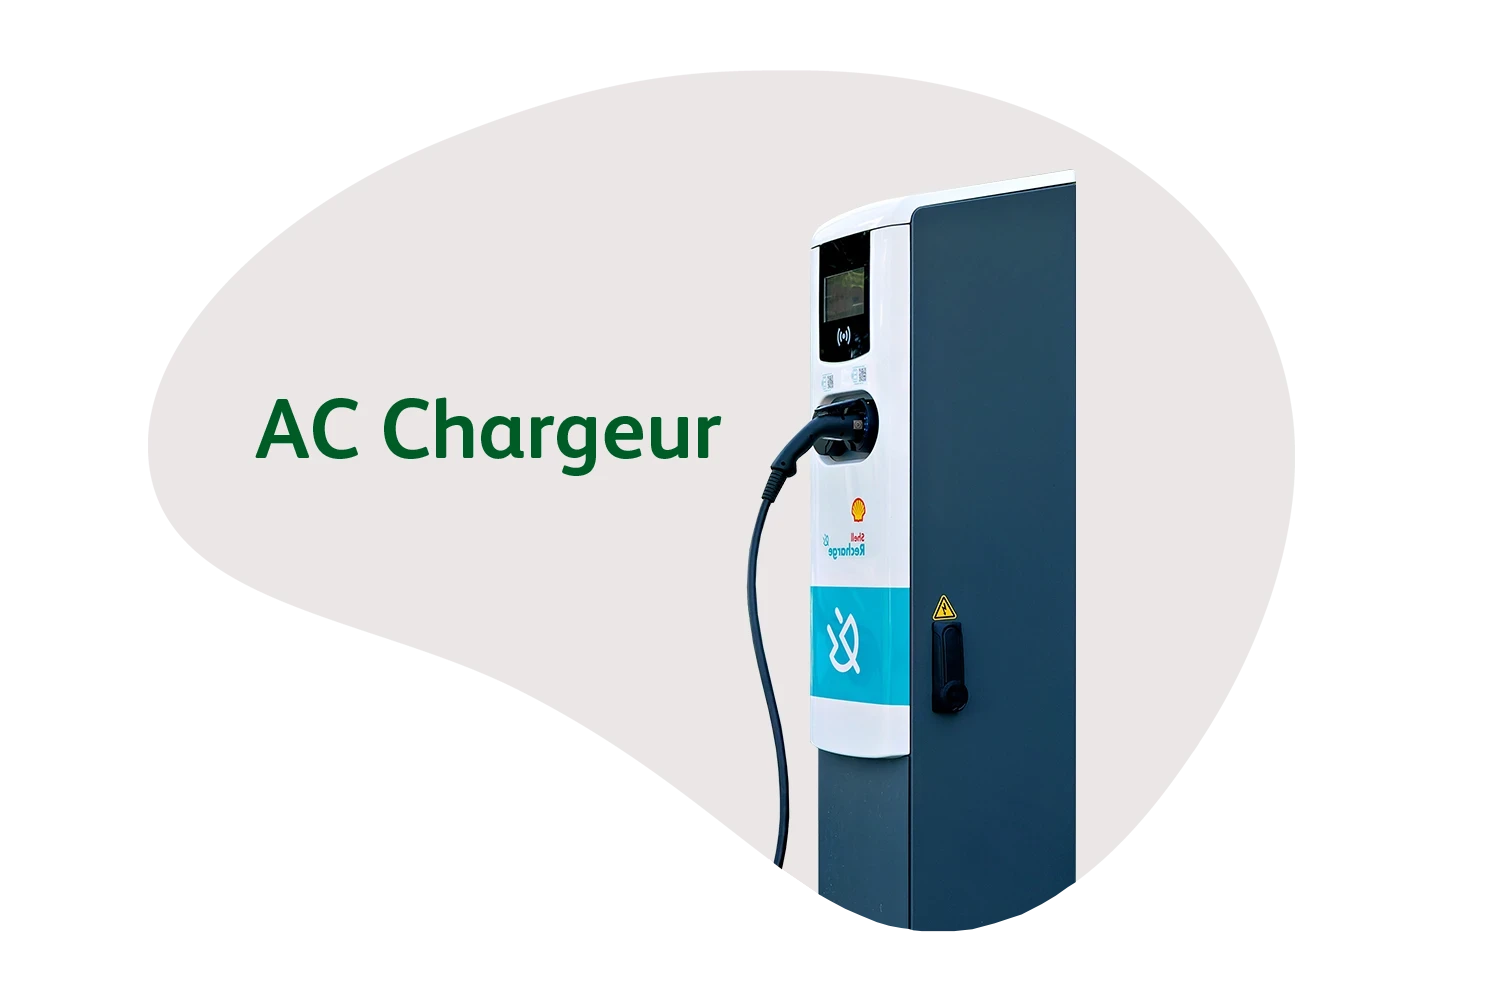 Représentation d'un chargeur Shell Recharge AC qu'ubitricity utilise pour développer son infrastructure de recharge.